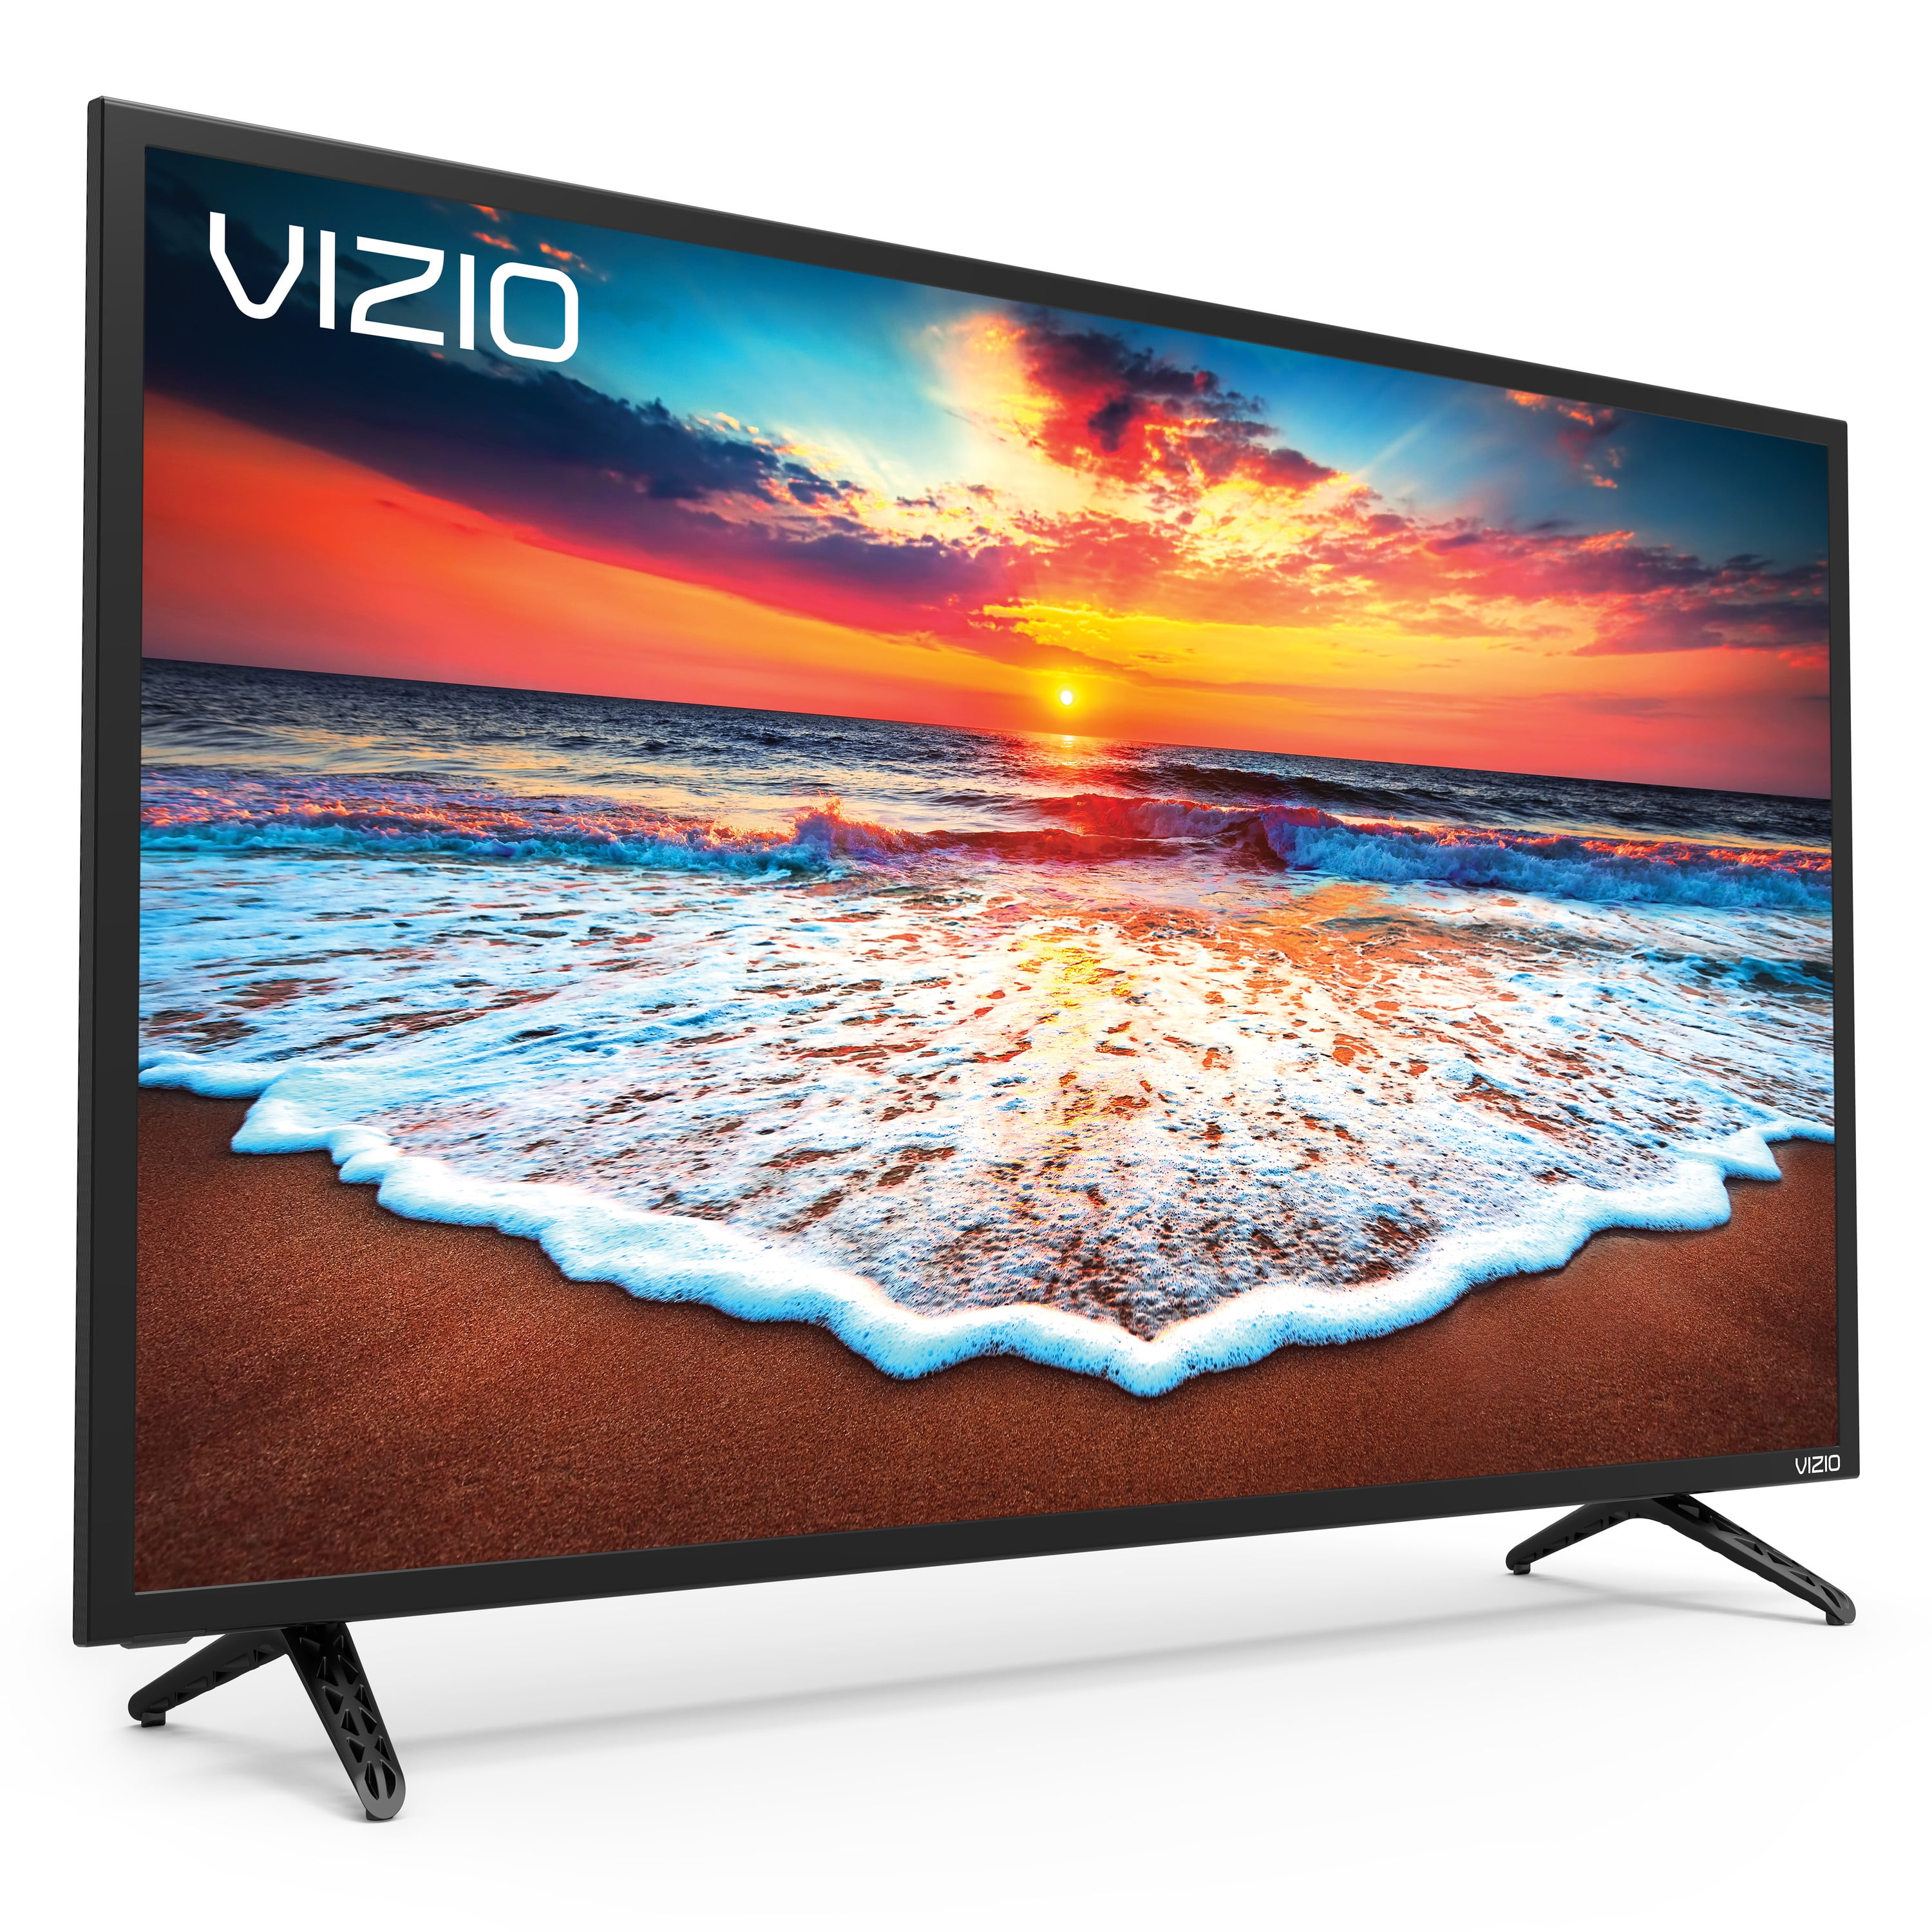 VIZIO 40" Class SmartCast D-Series FHD 1080P Smart Full-Array LED HD TV D40f-F1 